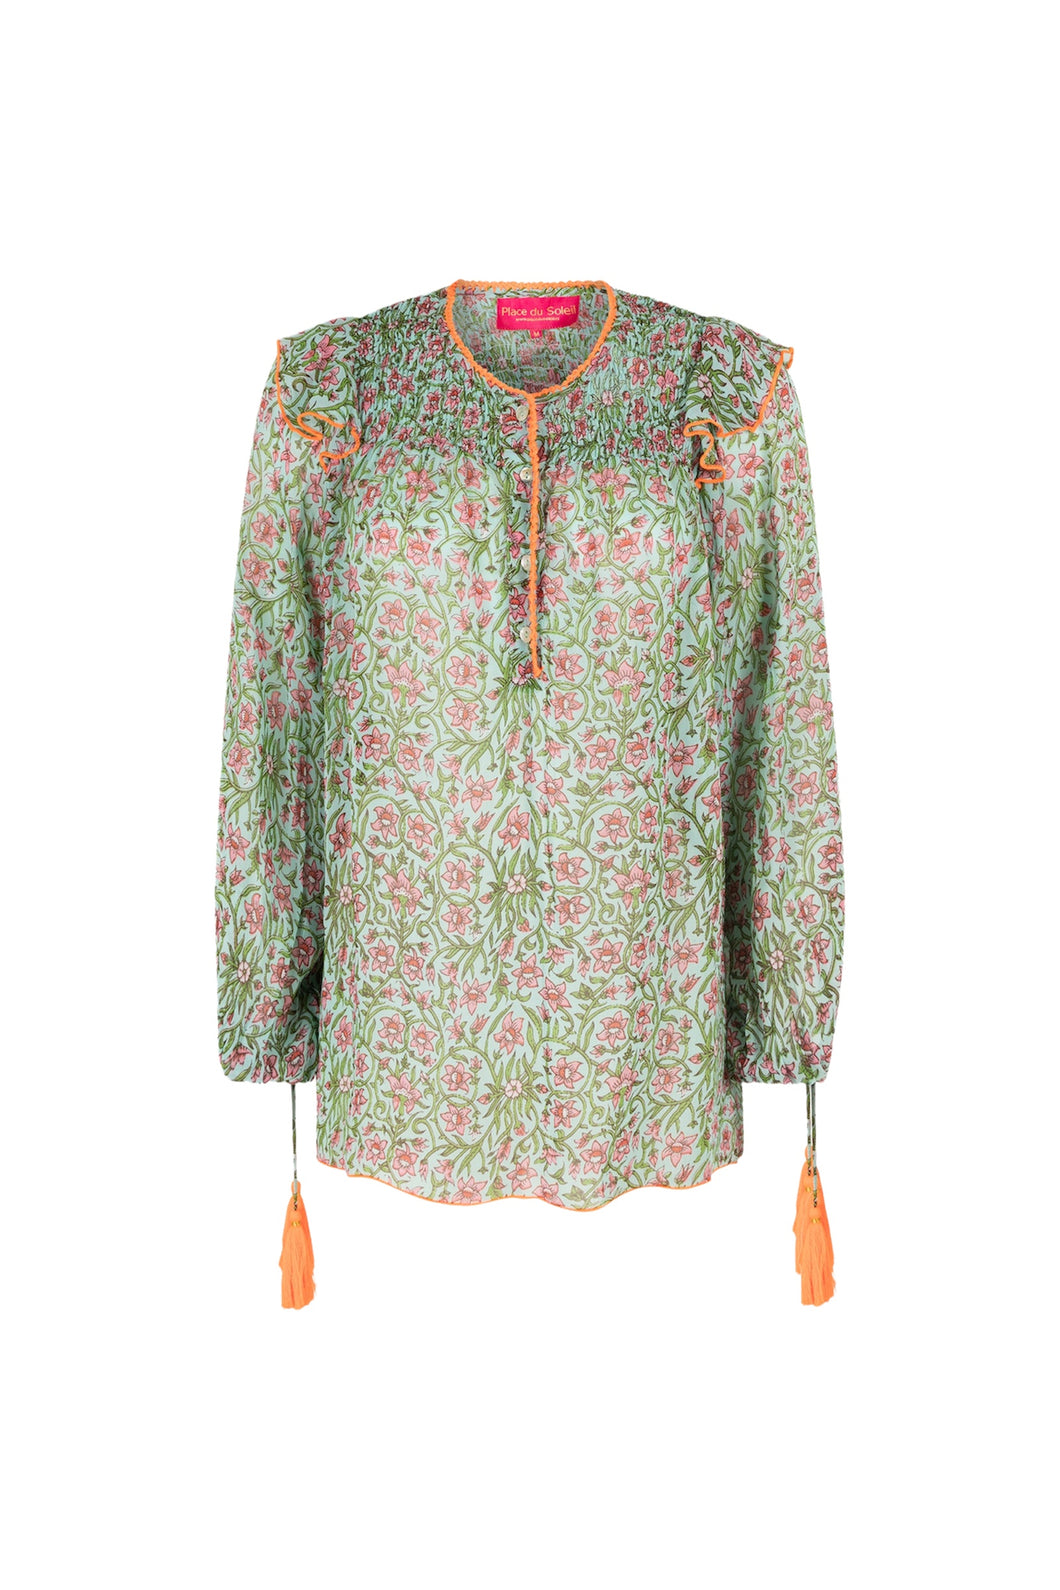 Groene Blouse van Place du Soleil, Floral Affair Mix Blouse is een wijder model blouse met lange mouwen en flosjes. Blouse heeft een ronde hals met oranje biesjes, knoopjes en flosjes. Blouse heeft een mooi bloemenmotief en ruches op de schouders.